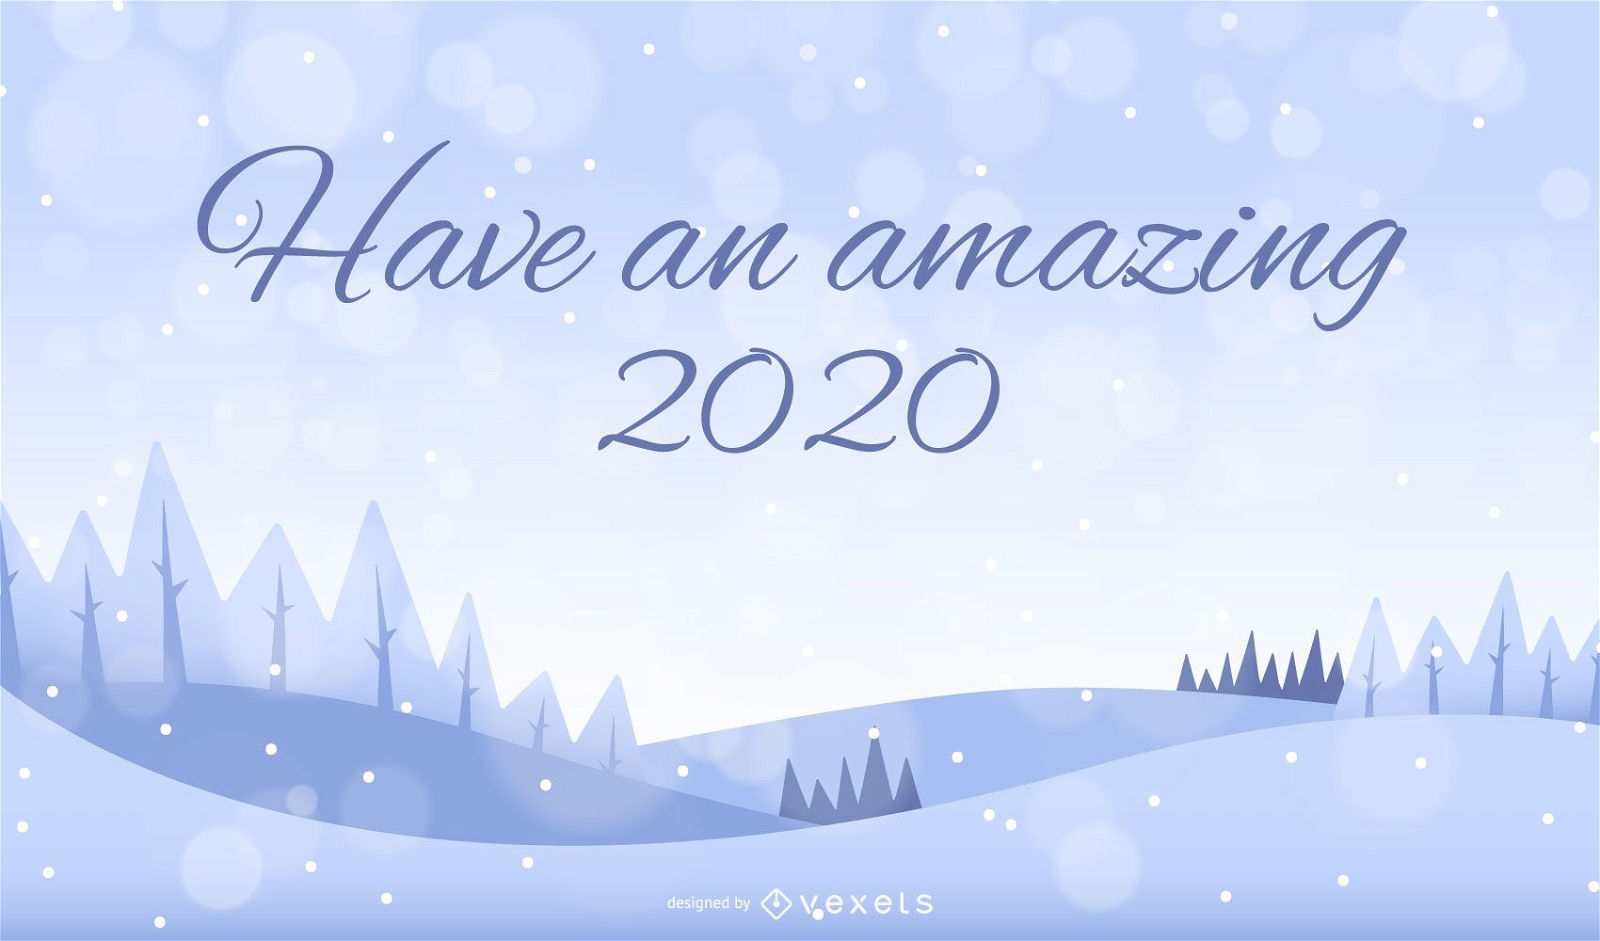 Fundo da paisagem com neve em 2020